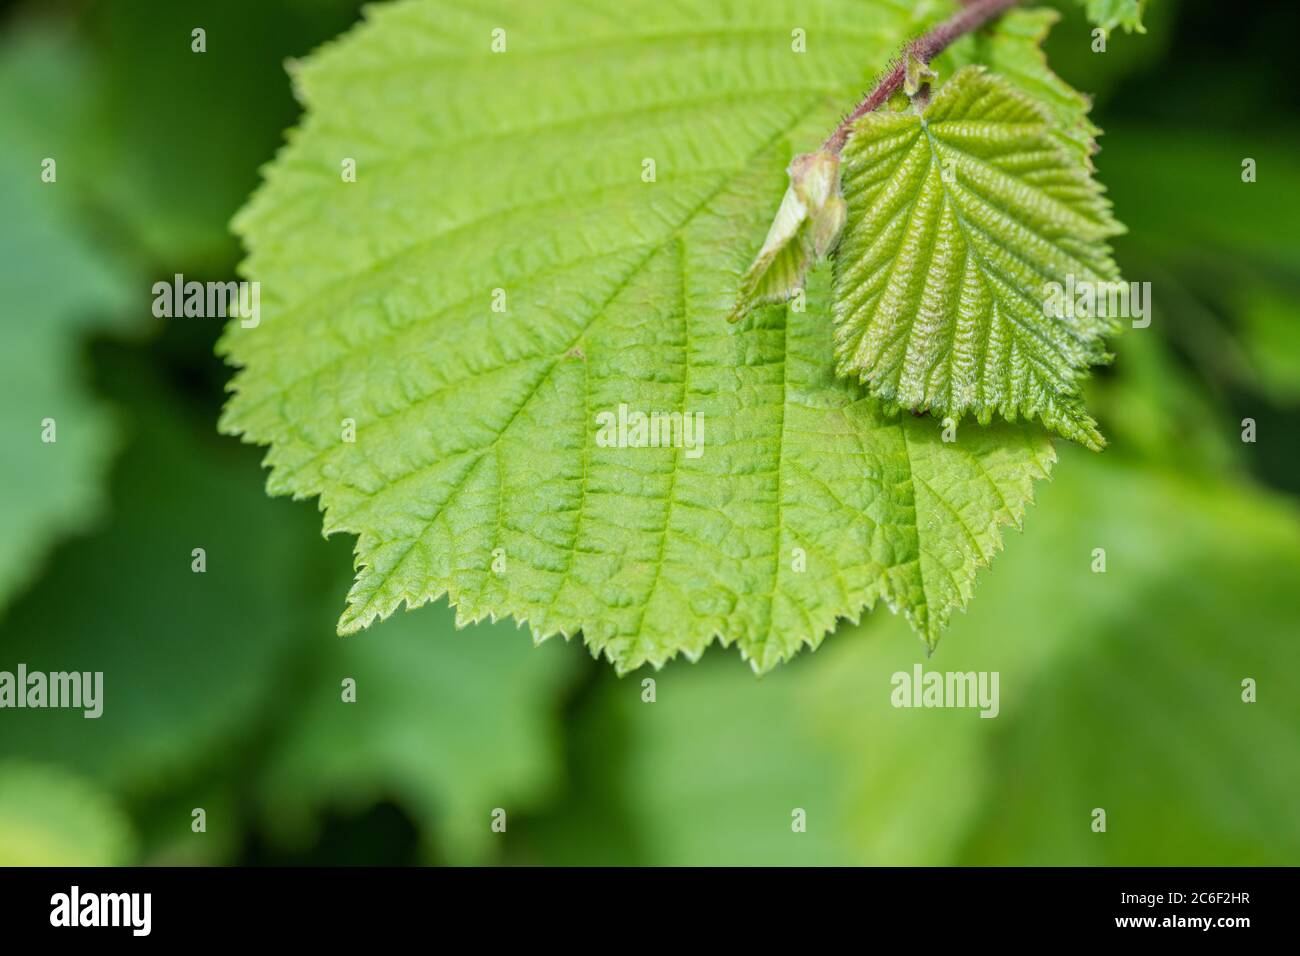 Juli Blätter von kleinen Haselbaum in Cornish Heckenhaus, zeigt spitze Spitze und Blattadern. Haselnüsse sind offensichtlich ein gemeinsames Essen. Stockfoto